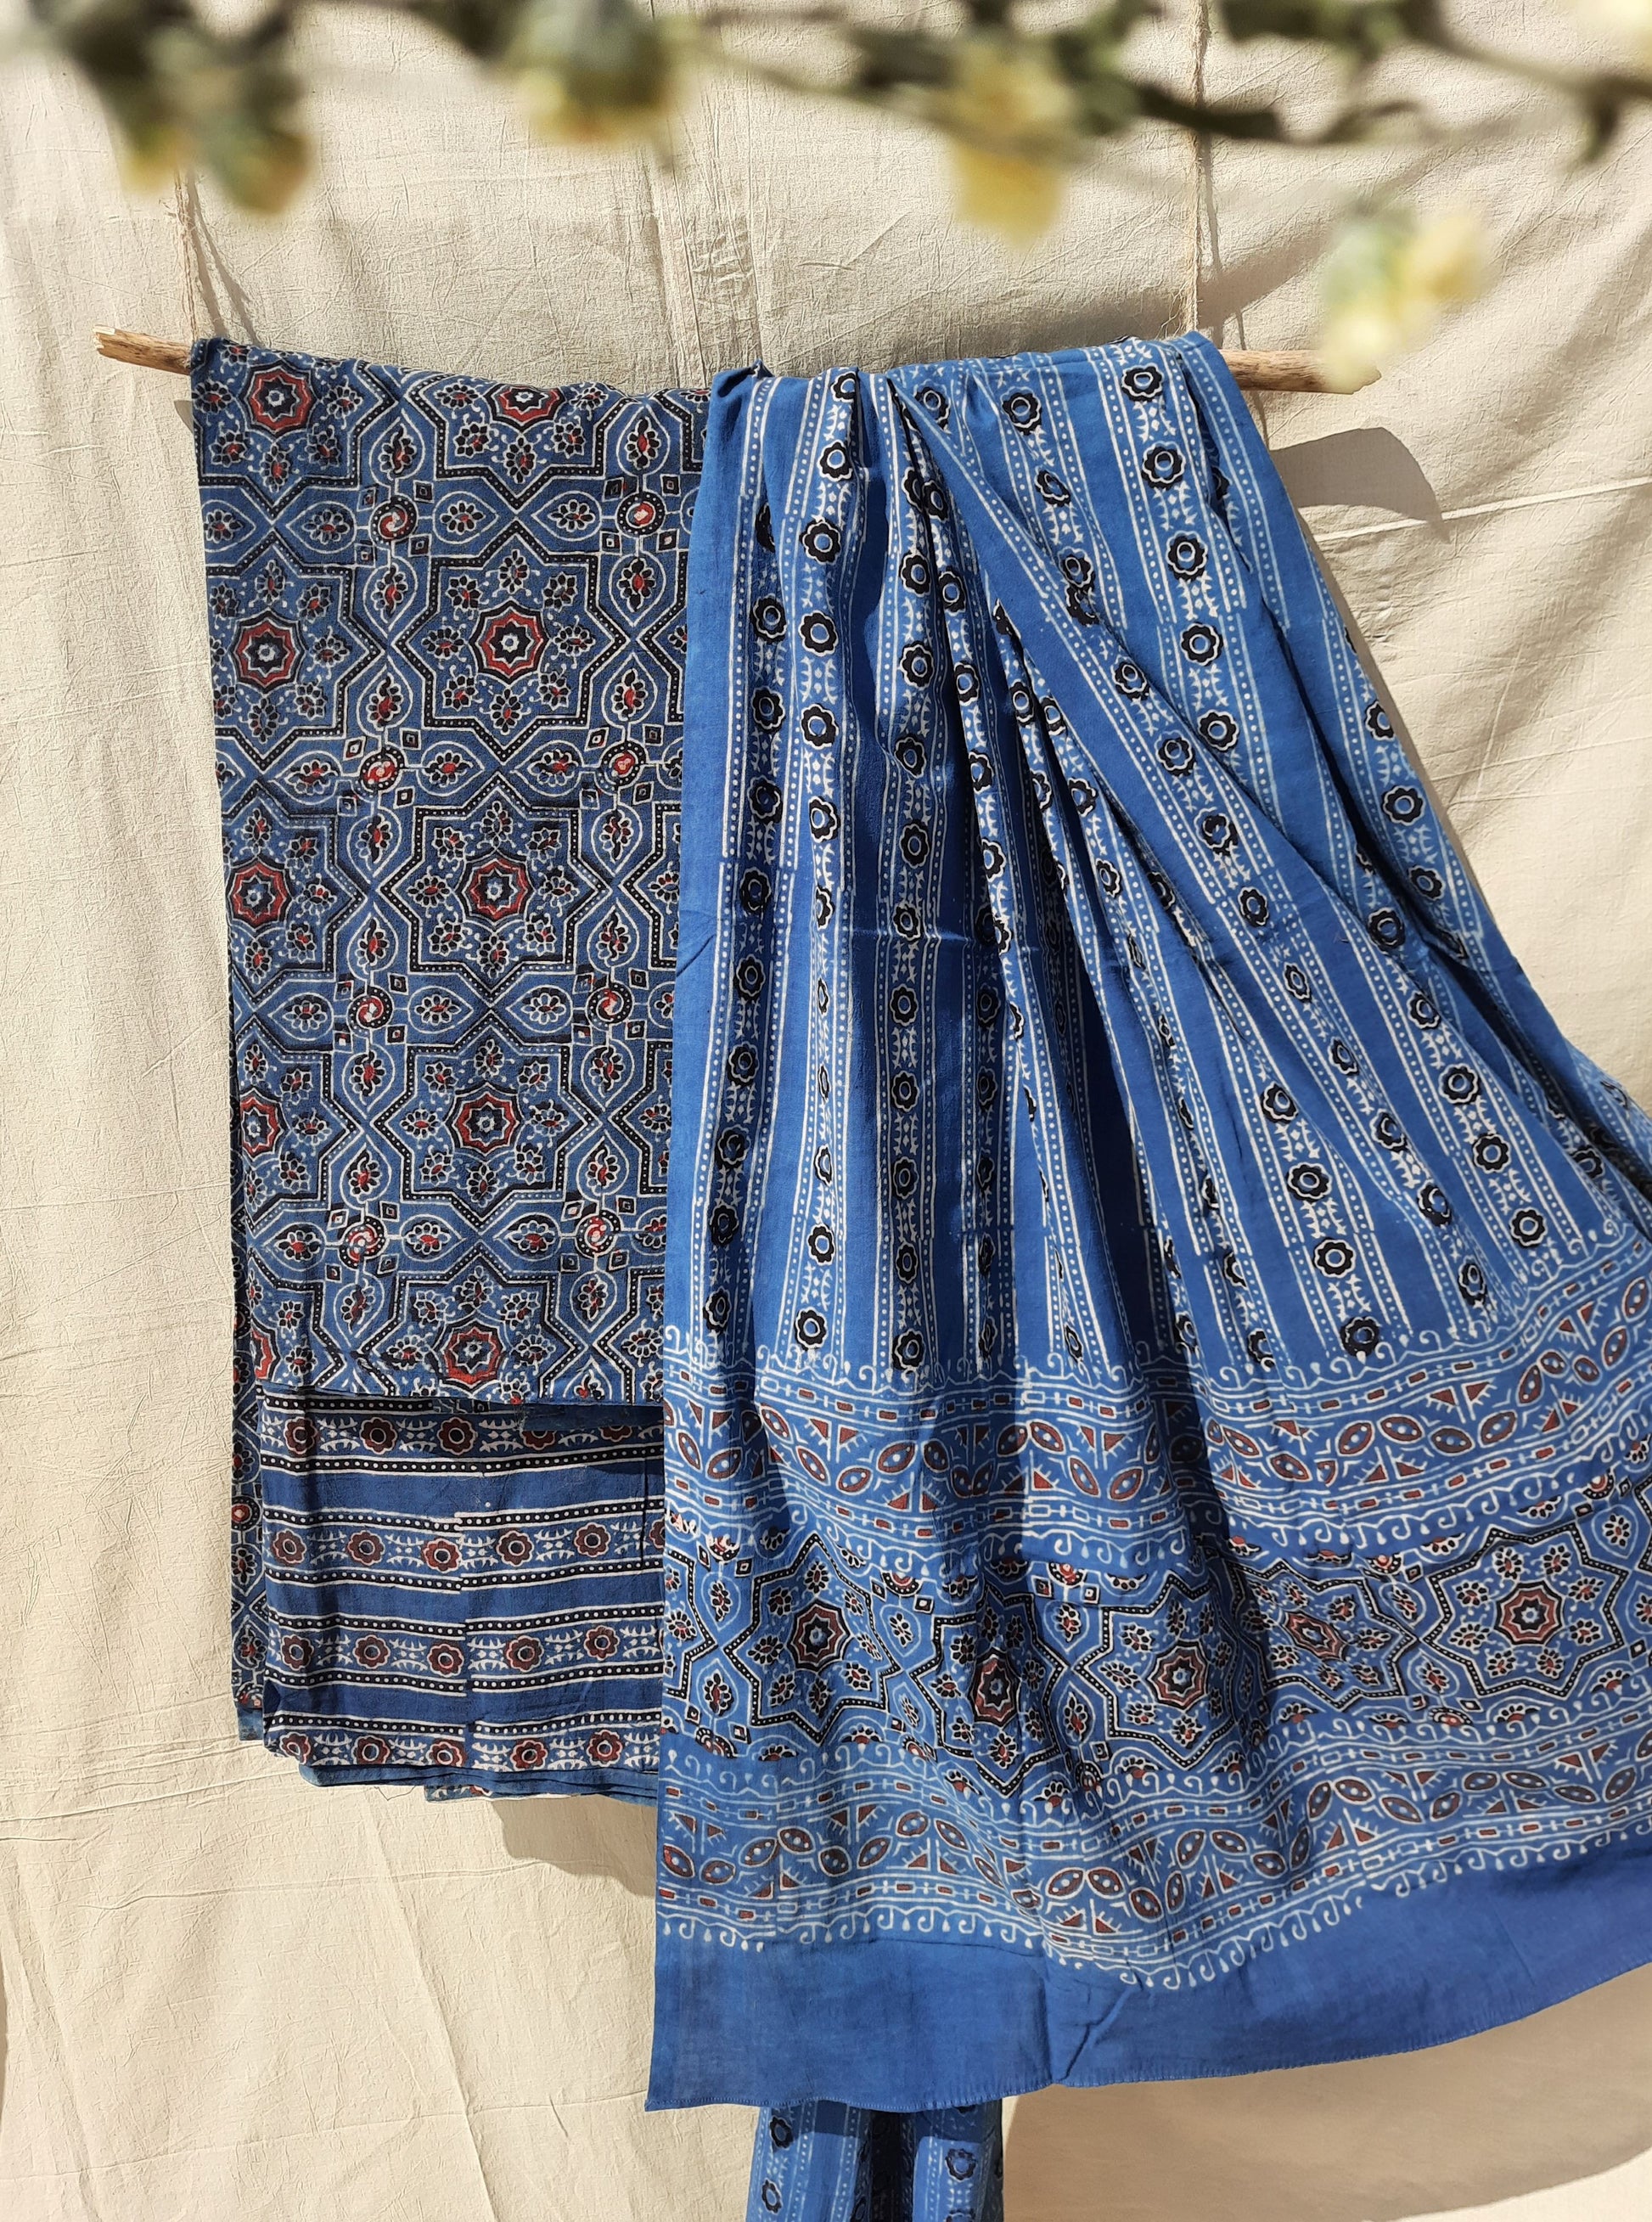 Indigo ajrakh prints cotton suit set, Ajrakh hand block print cotton suit set in indigo color